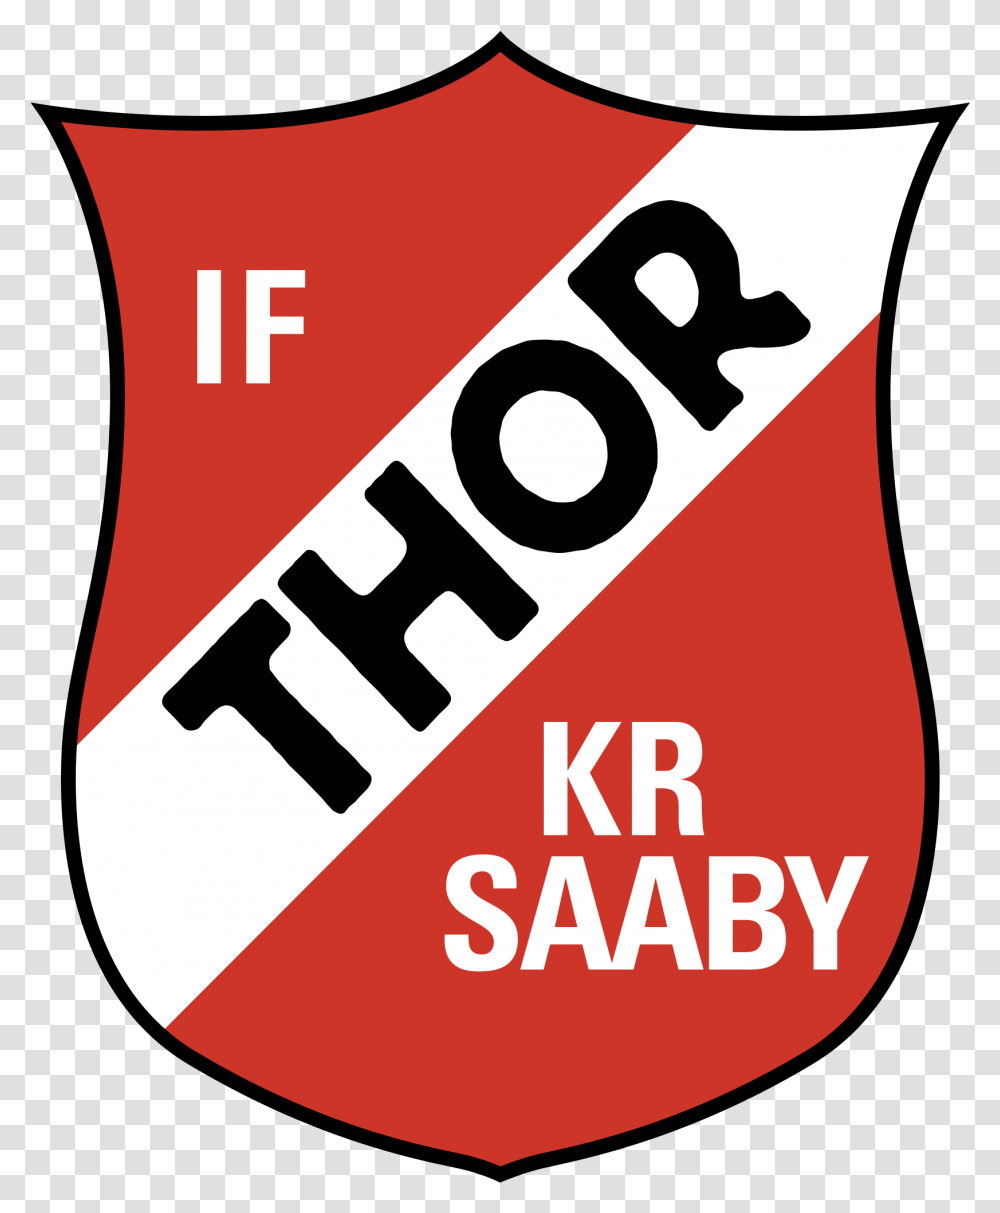 Thor Kr Saaby Logo, Label, Sticker Transparent Png